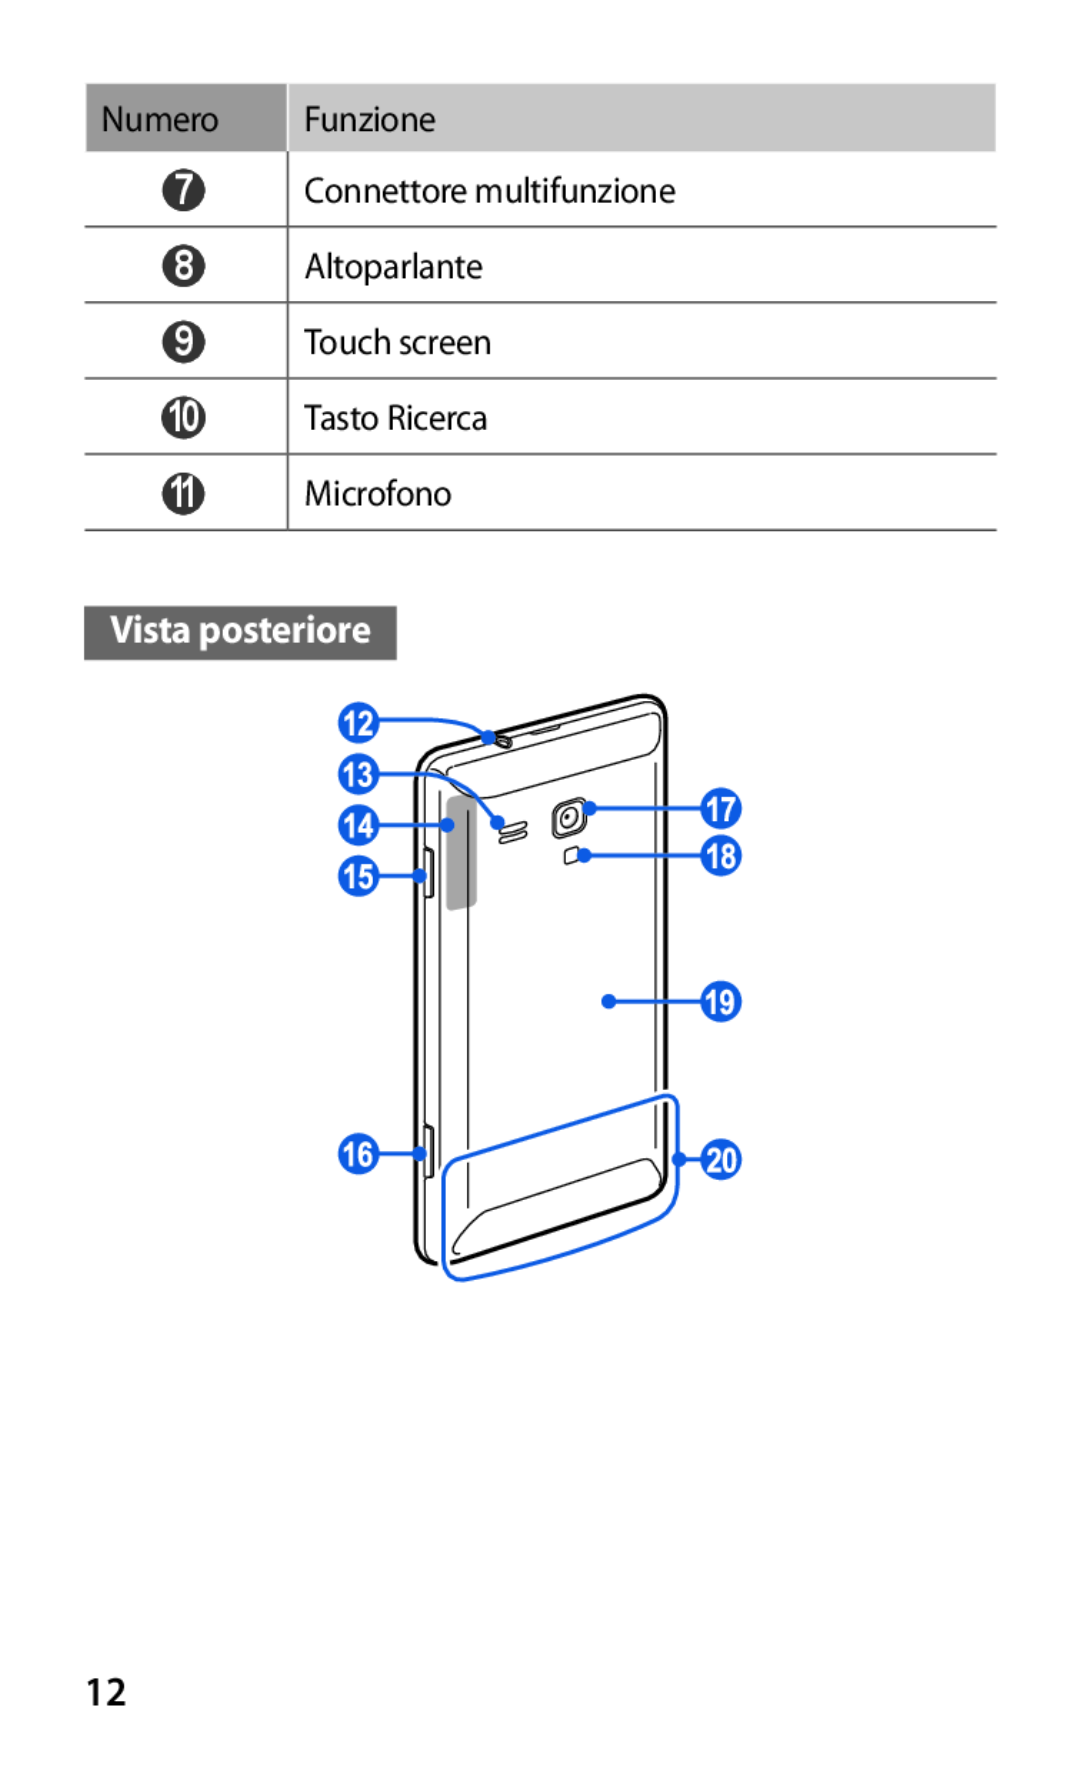 Samsung GT-S7530EAETIM manual Vista posteriore, Numero Funzione 7 Connettore multifunzione 8 Altoparlante, Touch screen 